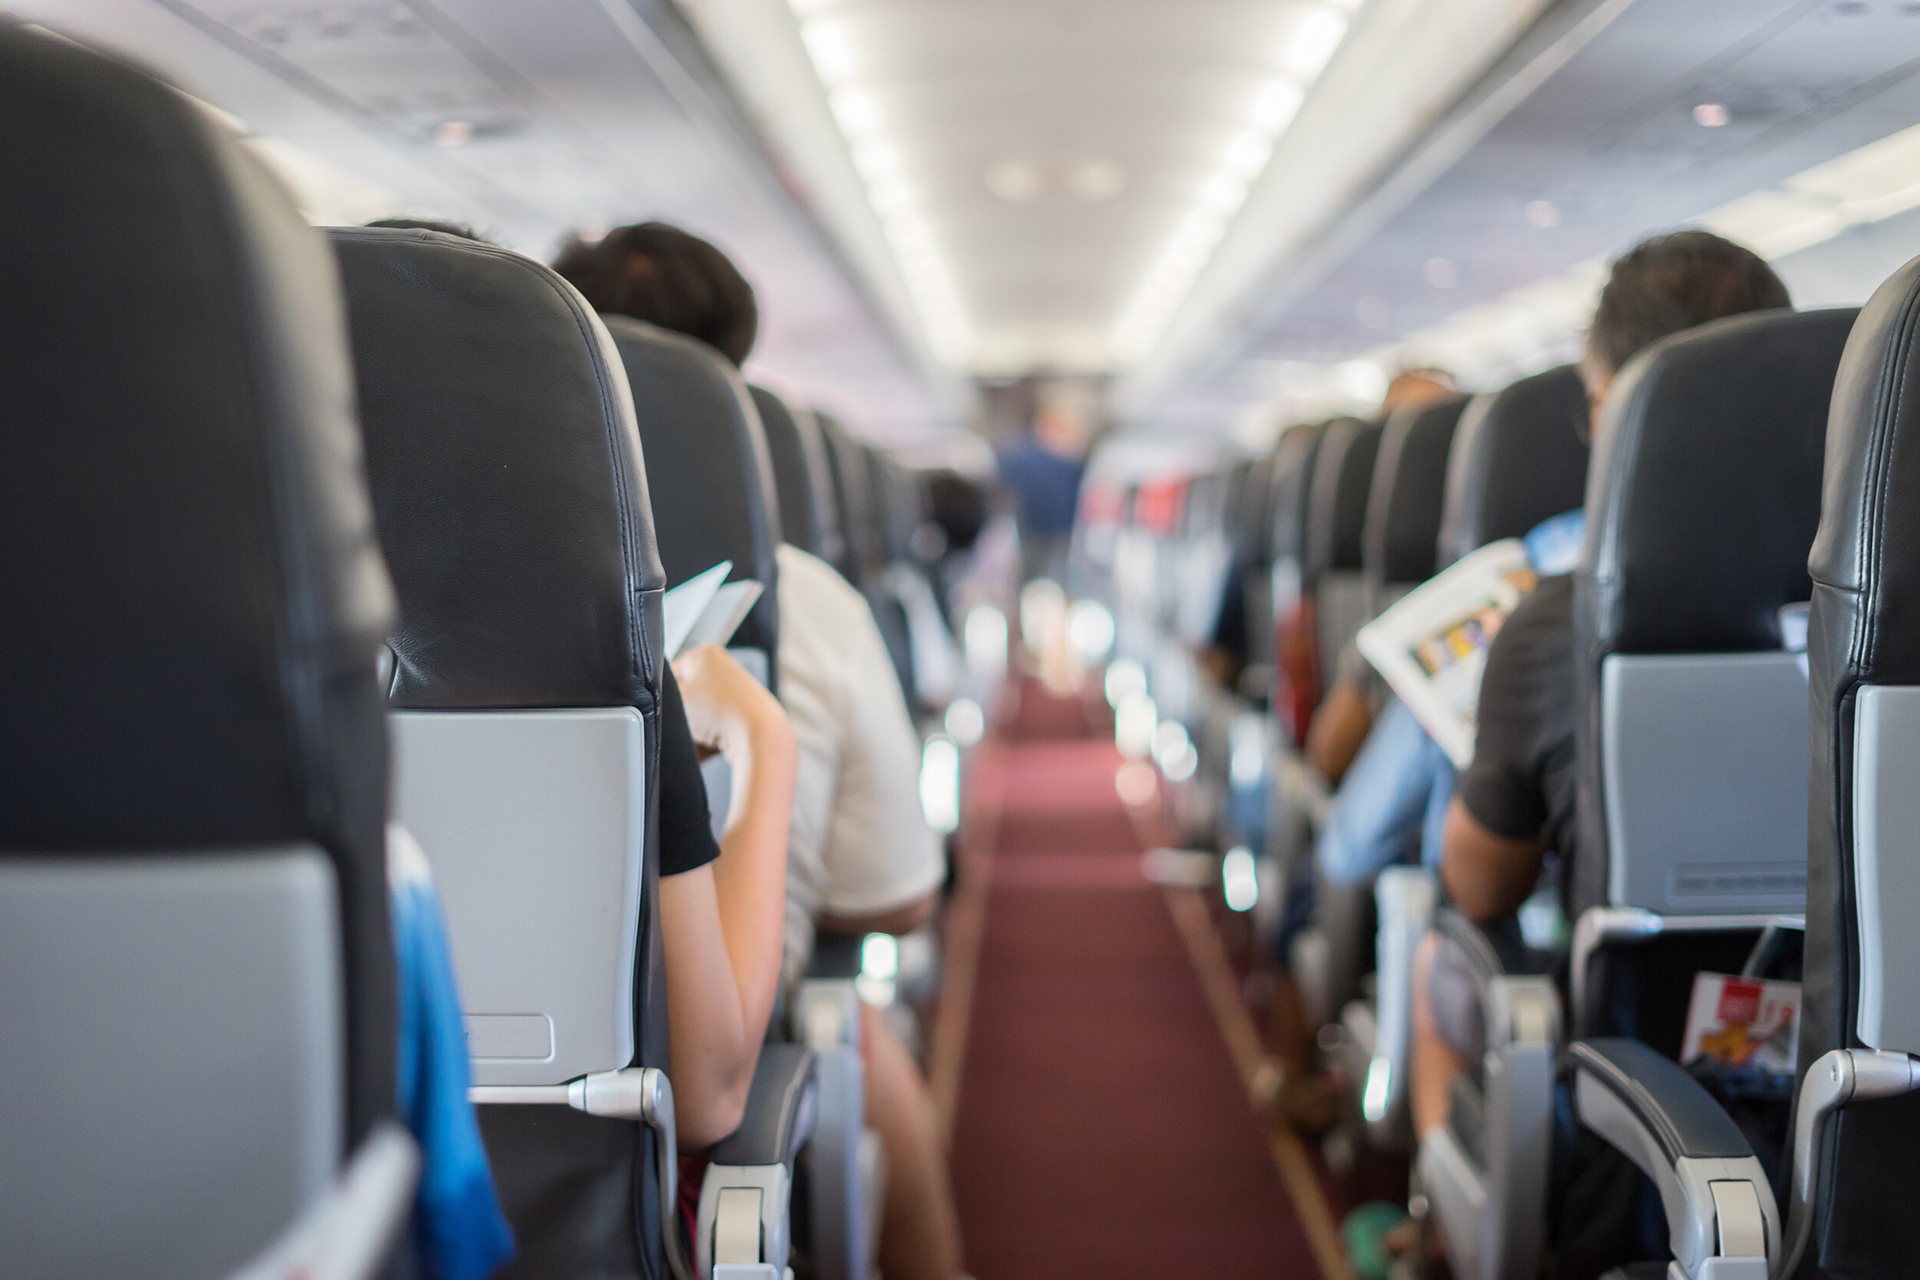 Không chỉ ảnh hưởng tới trải nghiệm của khách hàng, yếu tố an toàn cũng bị ảnh hưởng khi chỗ ngồi máy bay chật đi. Ảnh: CNN